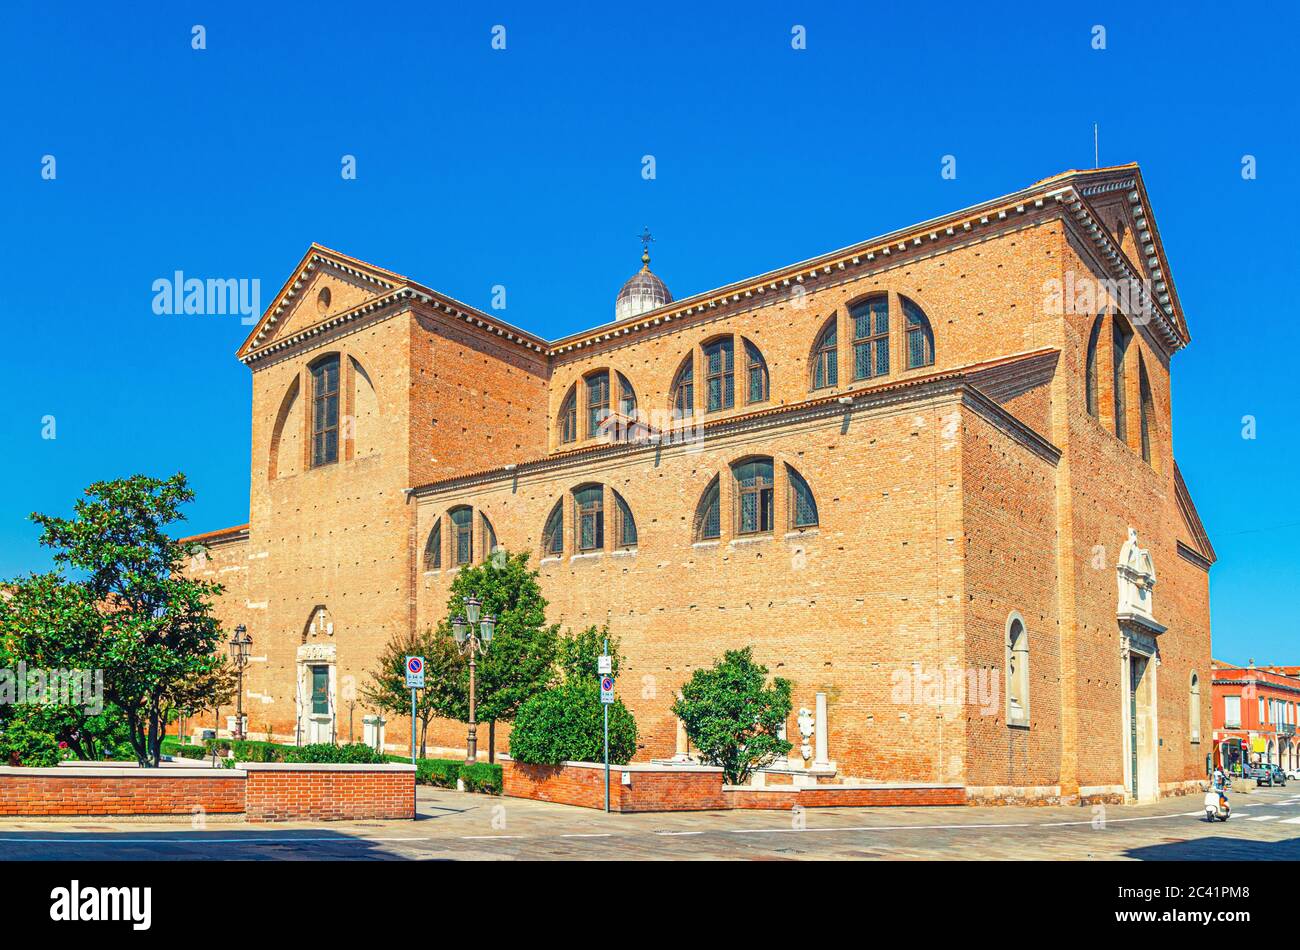 Duomo Santa Maria Assunta Duomo Chiesa cattolica romana nel centro storico di Chioggia, cielo blu di fondo nella giornata estiva, Regione Veneto, Italia settentrionale Foto Stock